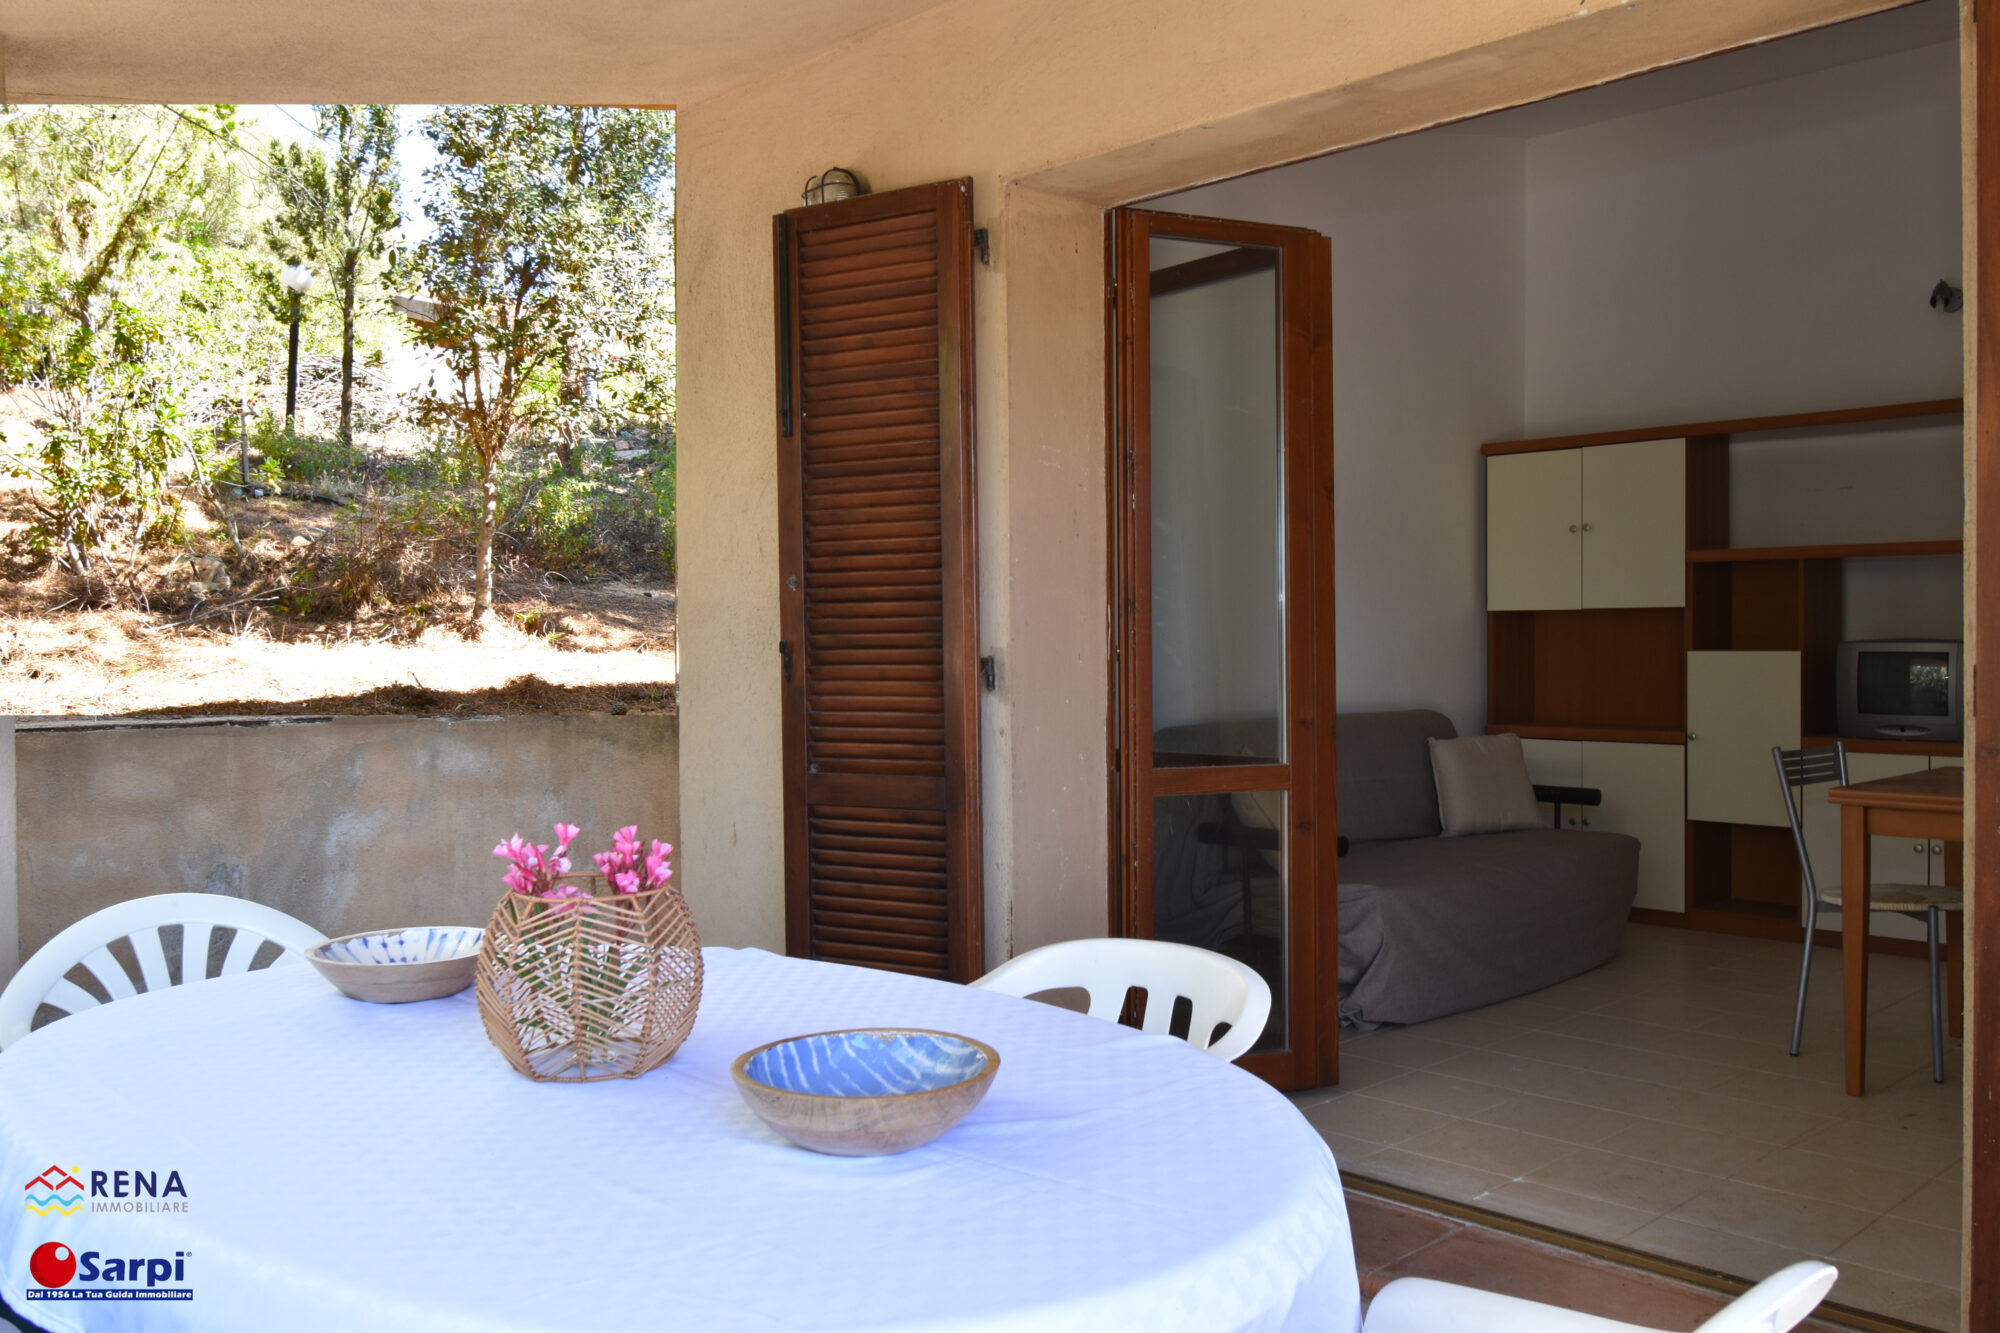 Interessante villetta con veranda e giardino privato – Costa Paradiso